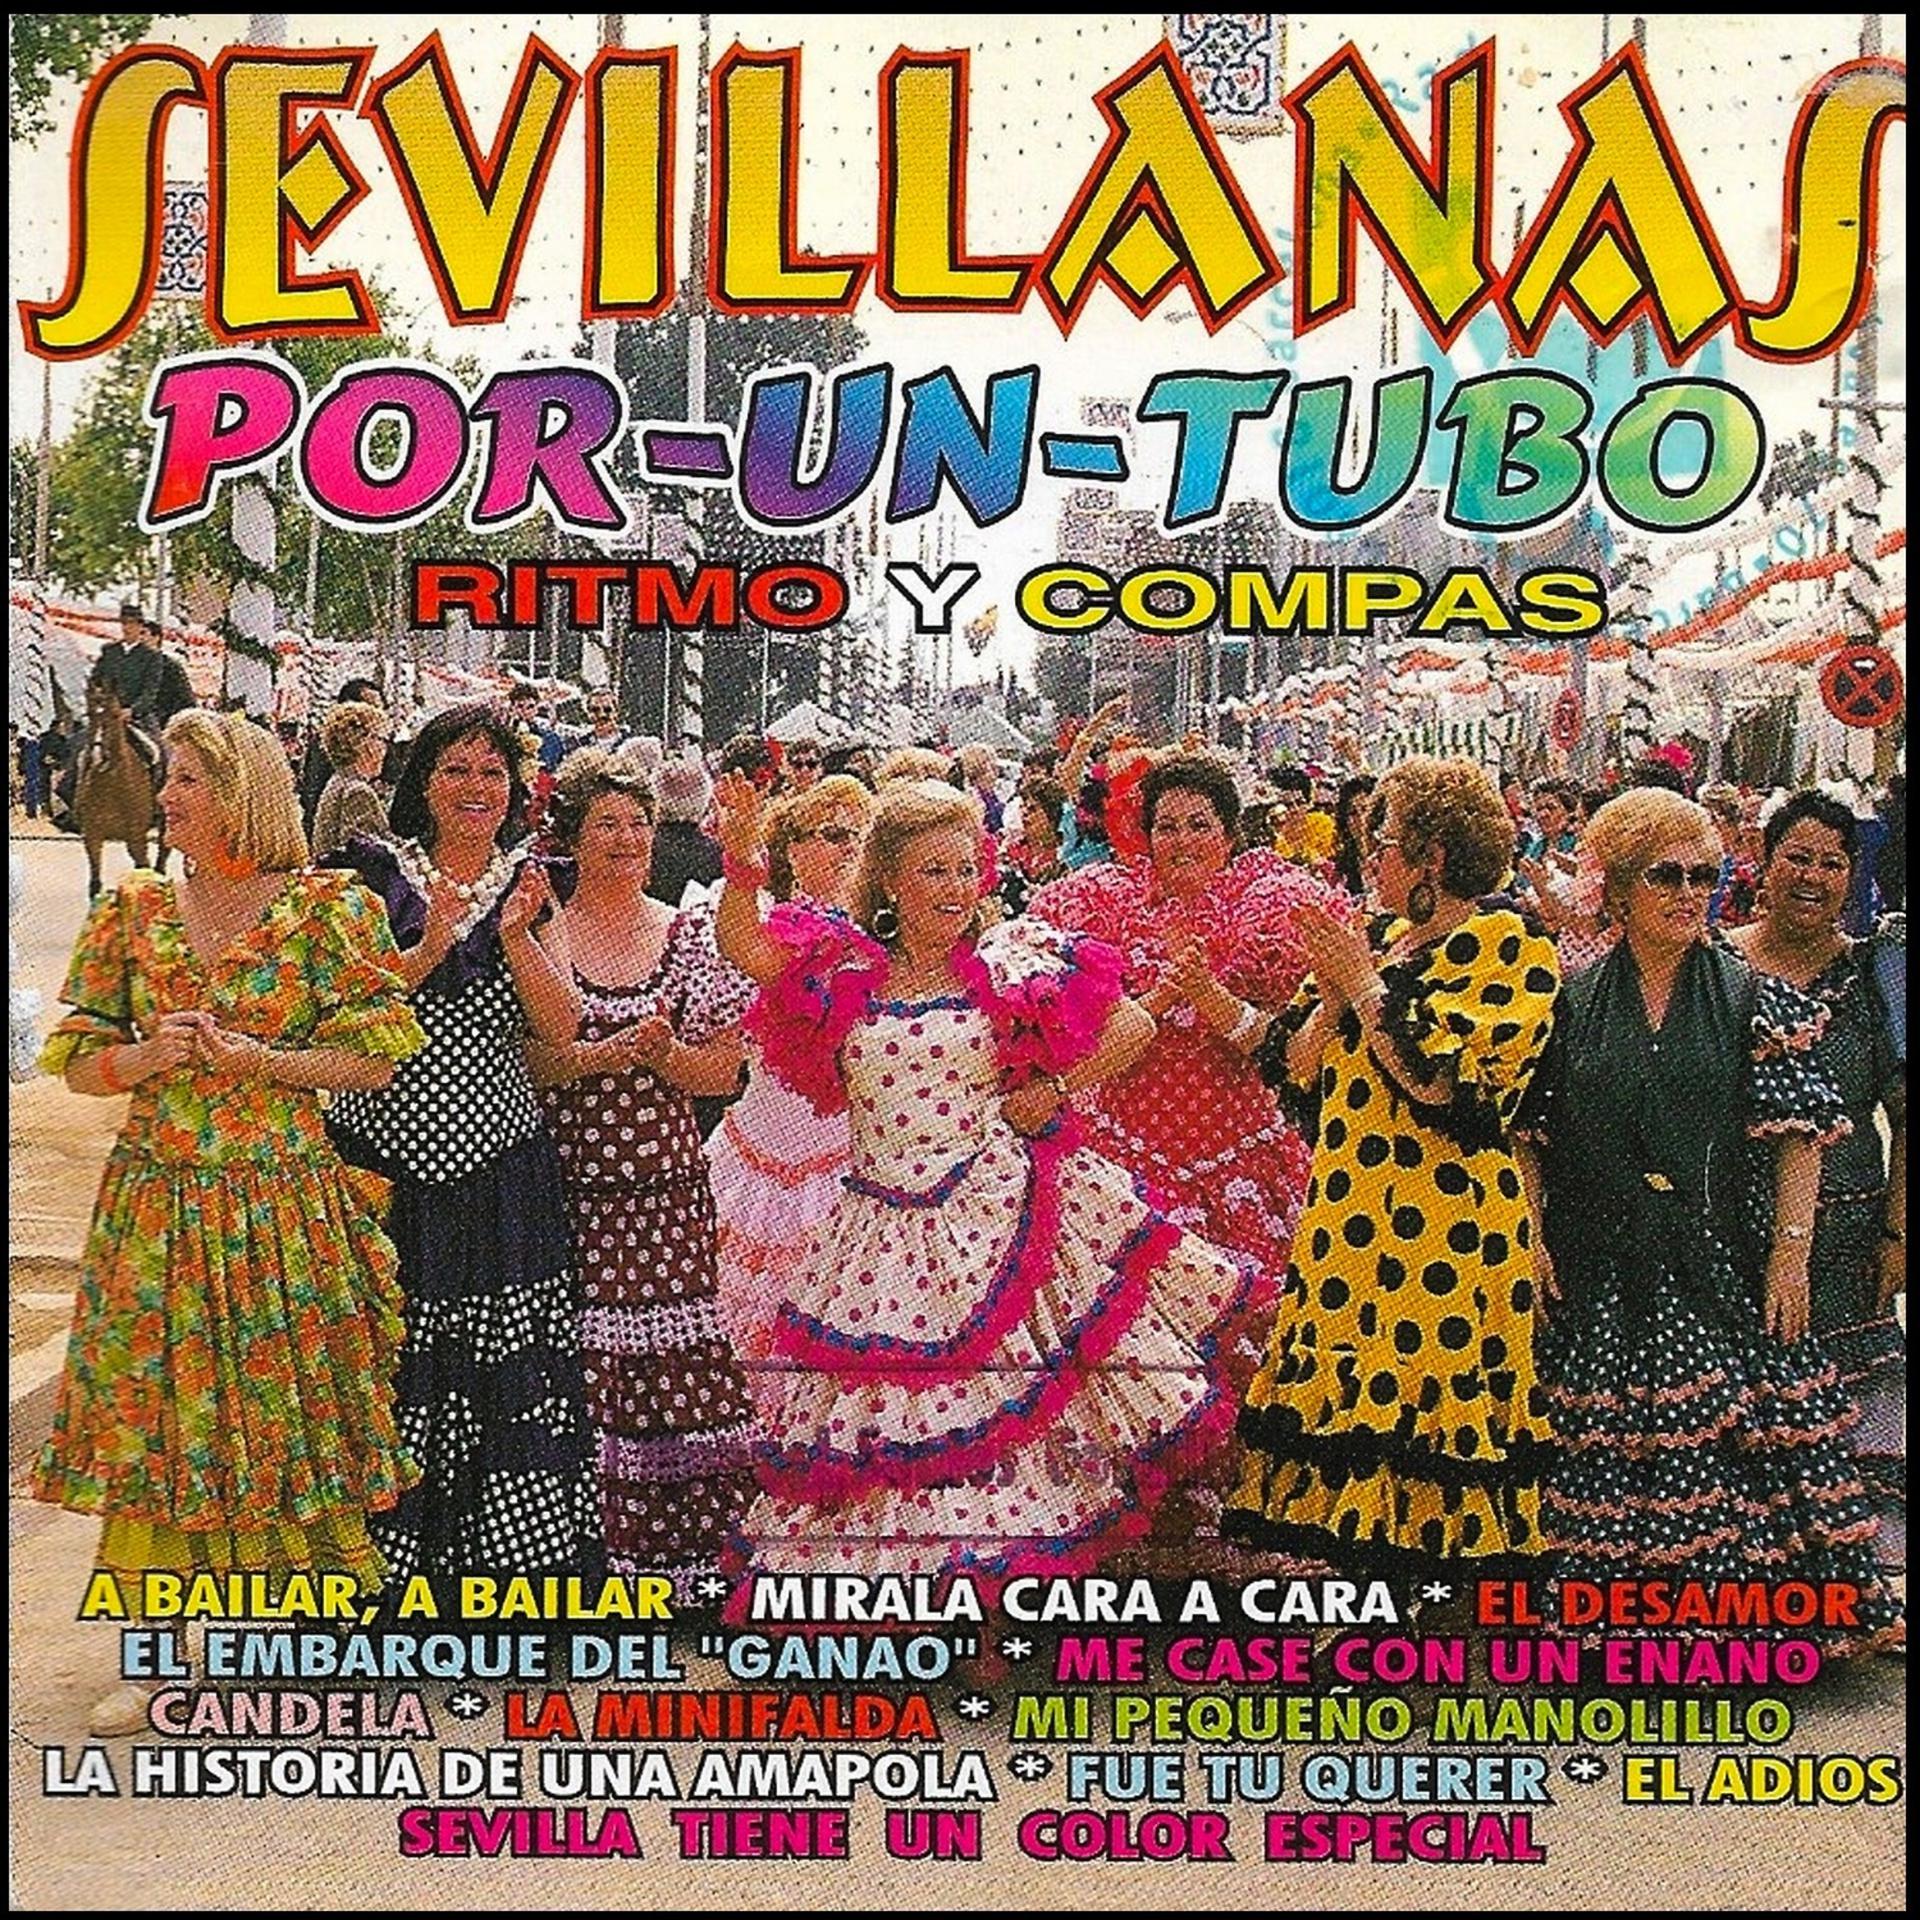 Постер альбома Sevillanas por un Tubo: Ritmo y Compás